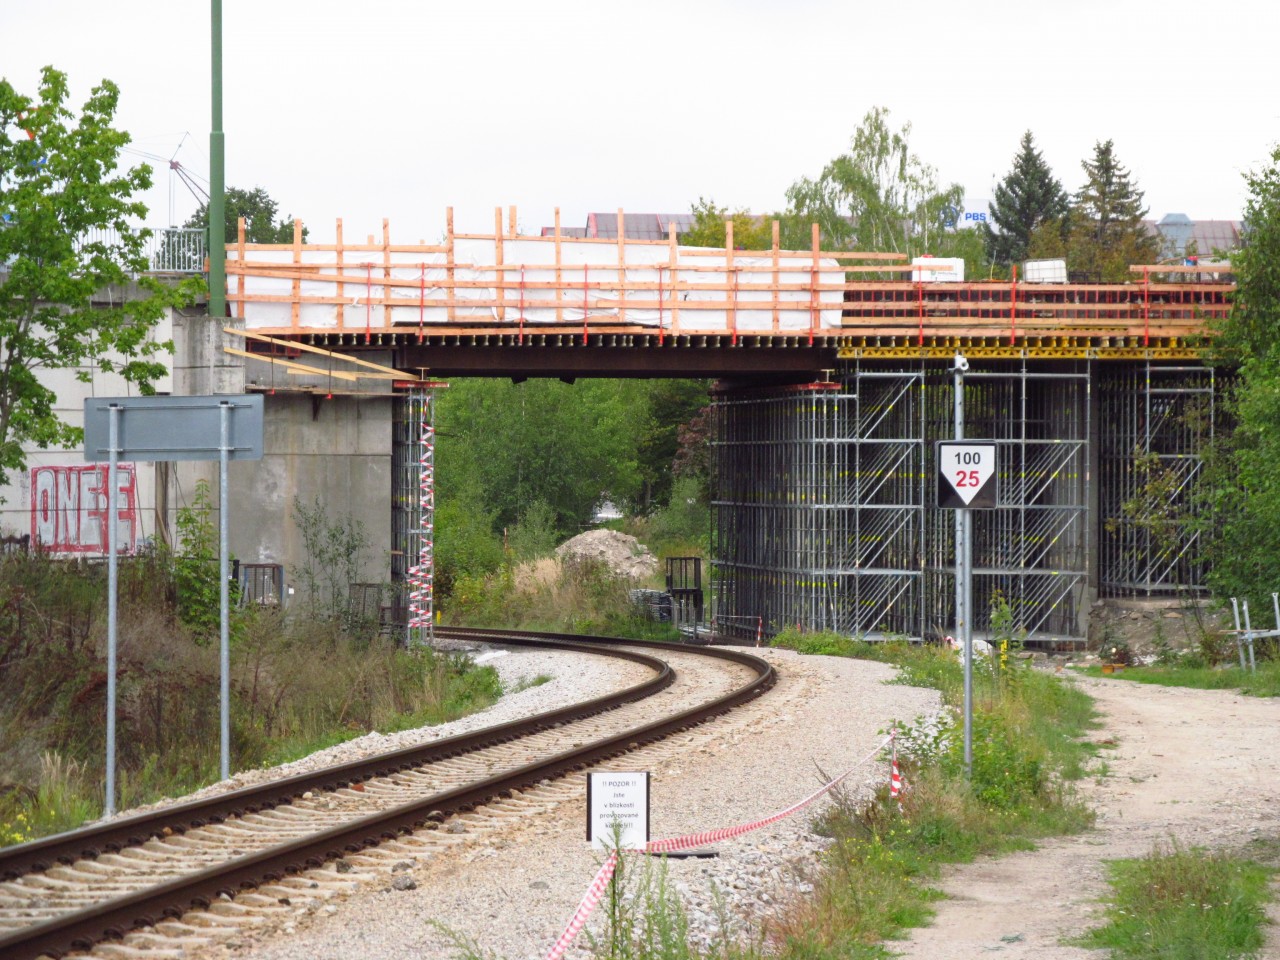 Stav vstavby mostu (star most slouil v letech 1995 - 2019) v Tebi-Hrotovick ul.